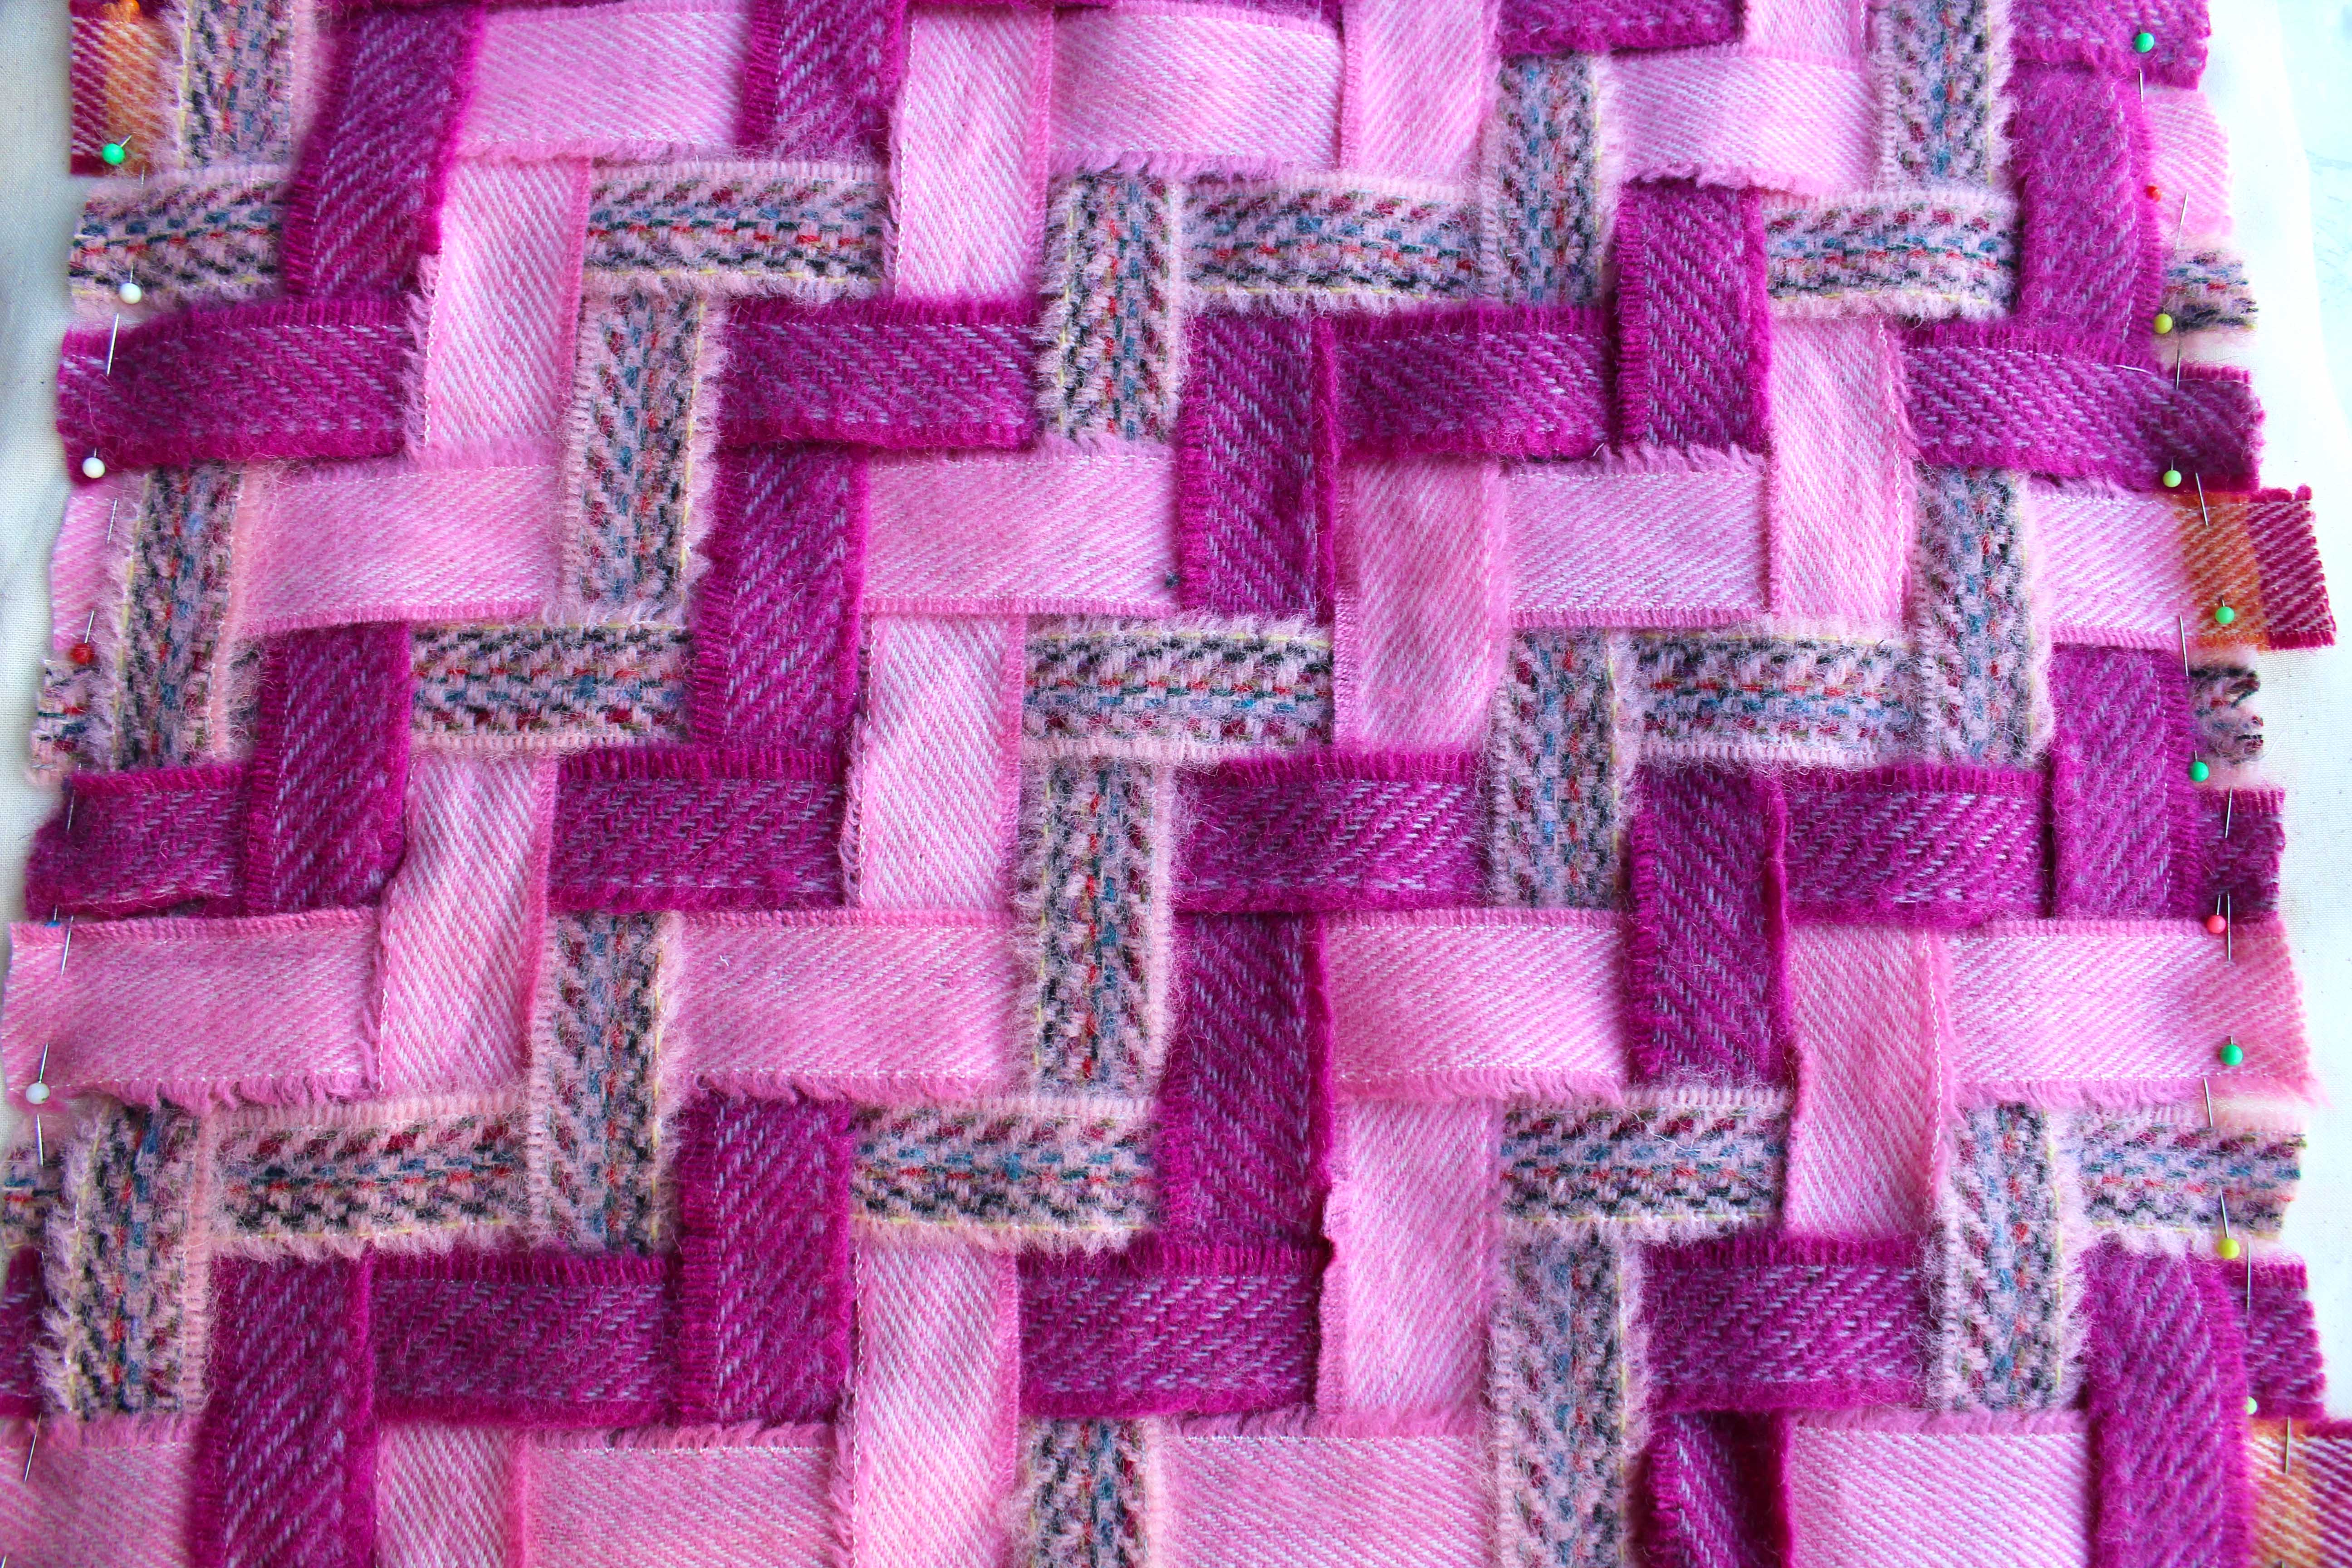 Work In Progress Blanket Yarn Ribbon Weaving Sample Mixed Purple Pink